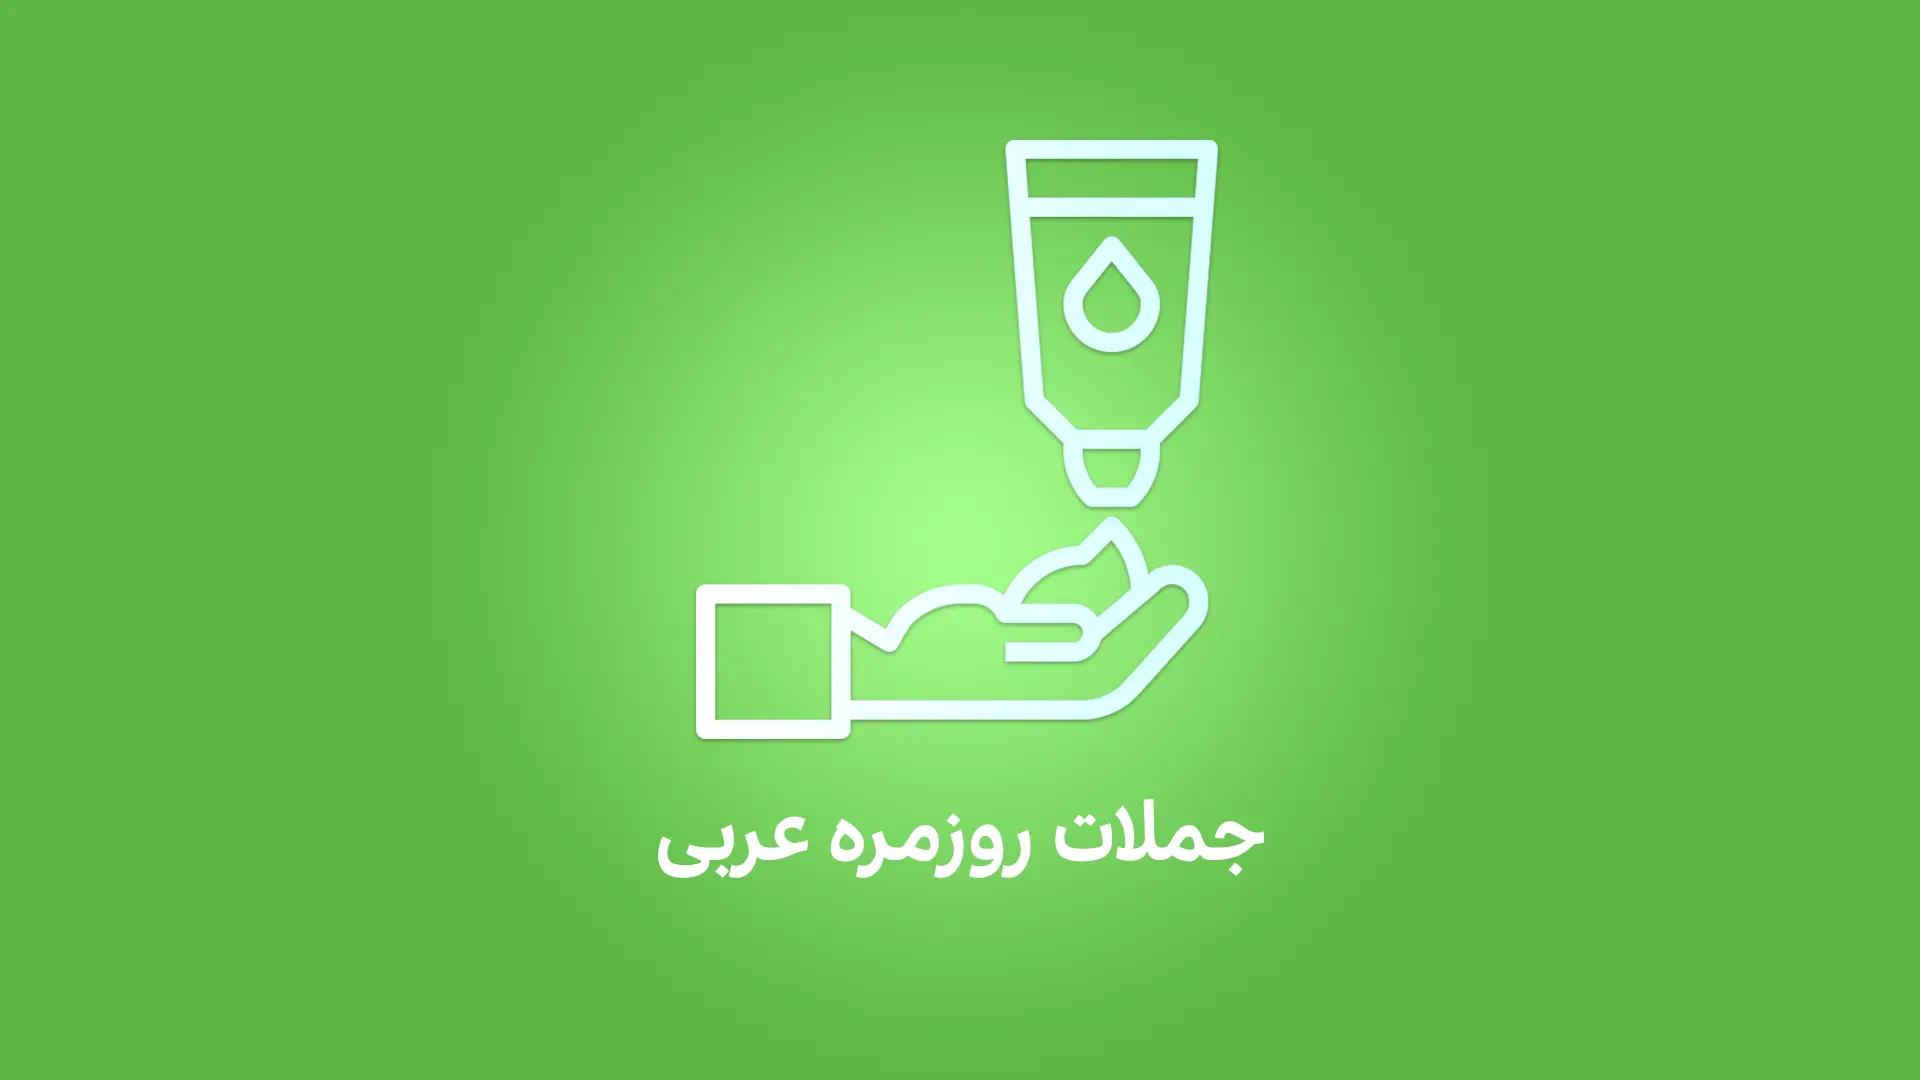 جملات کاربردی روزمره به عربی لهجه لبنانی و سوری (شامی)